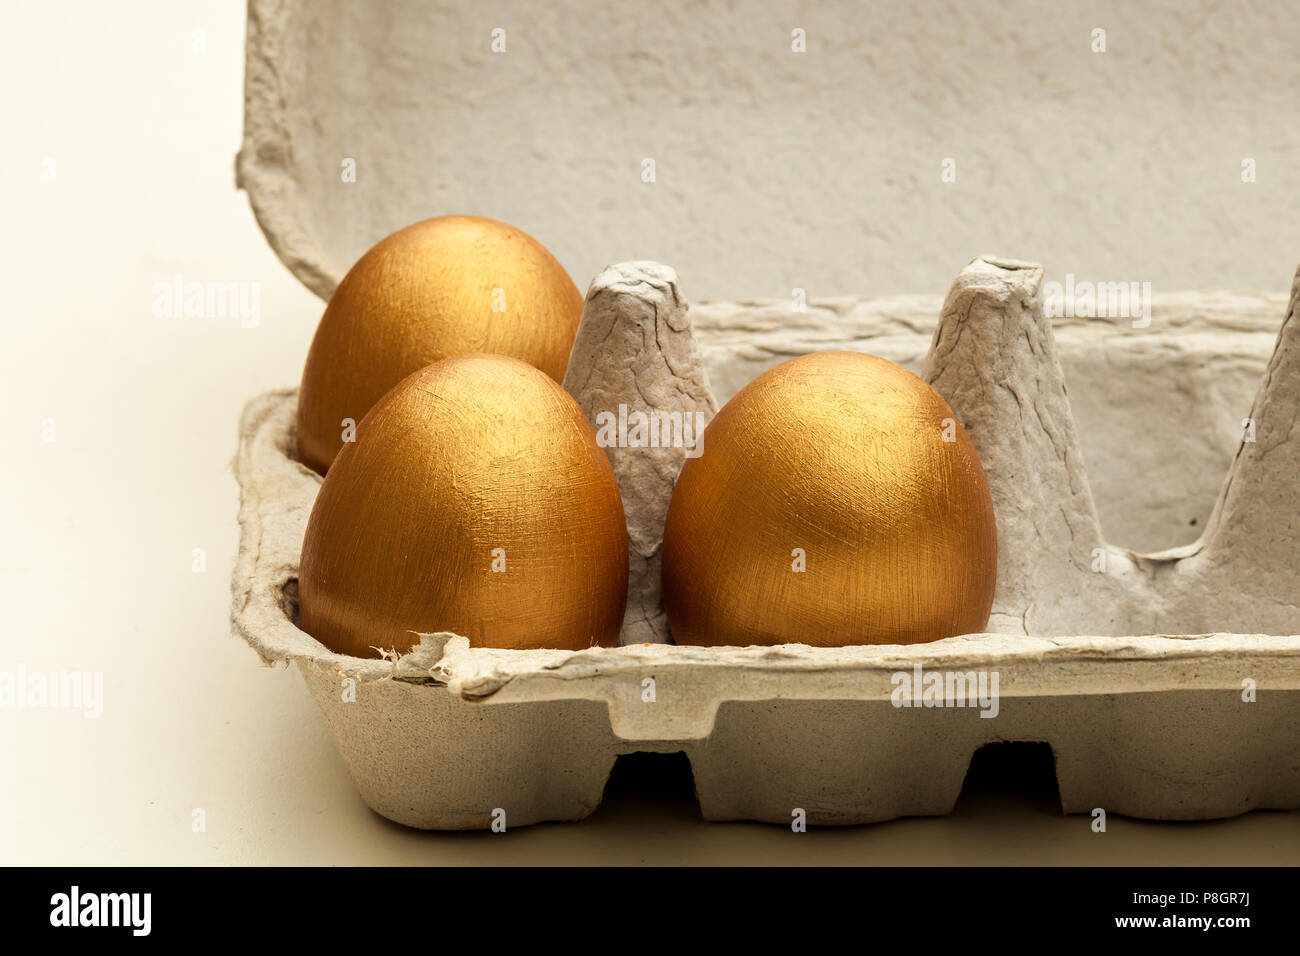 Dipinte a mano uova d'oro in una confezione di uova Foto Stock